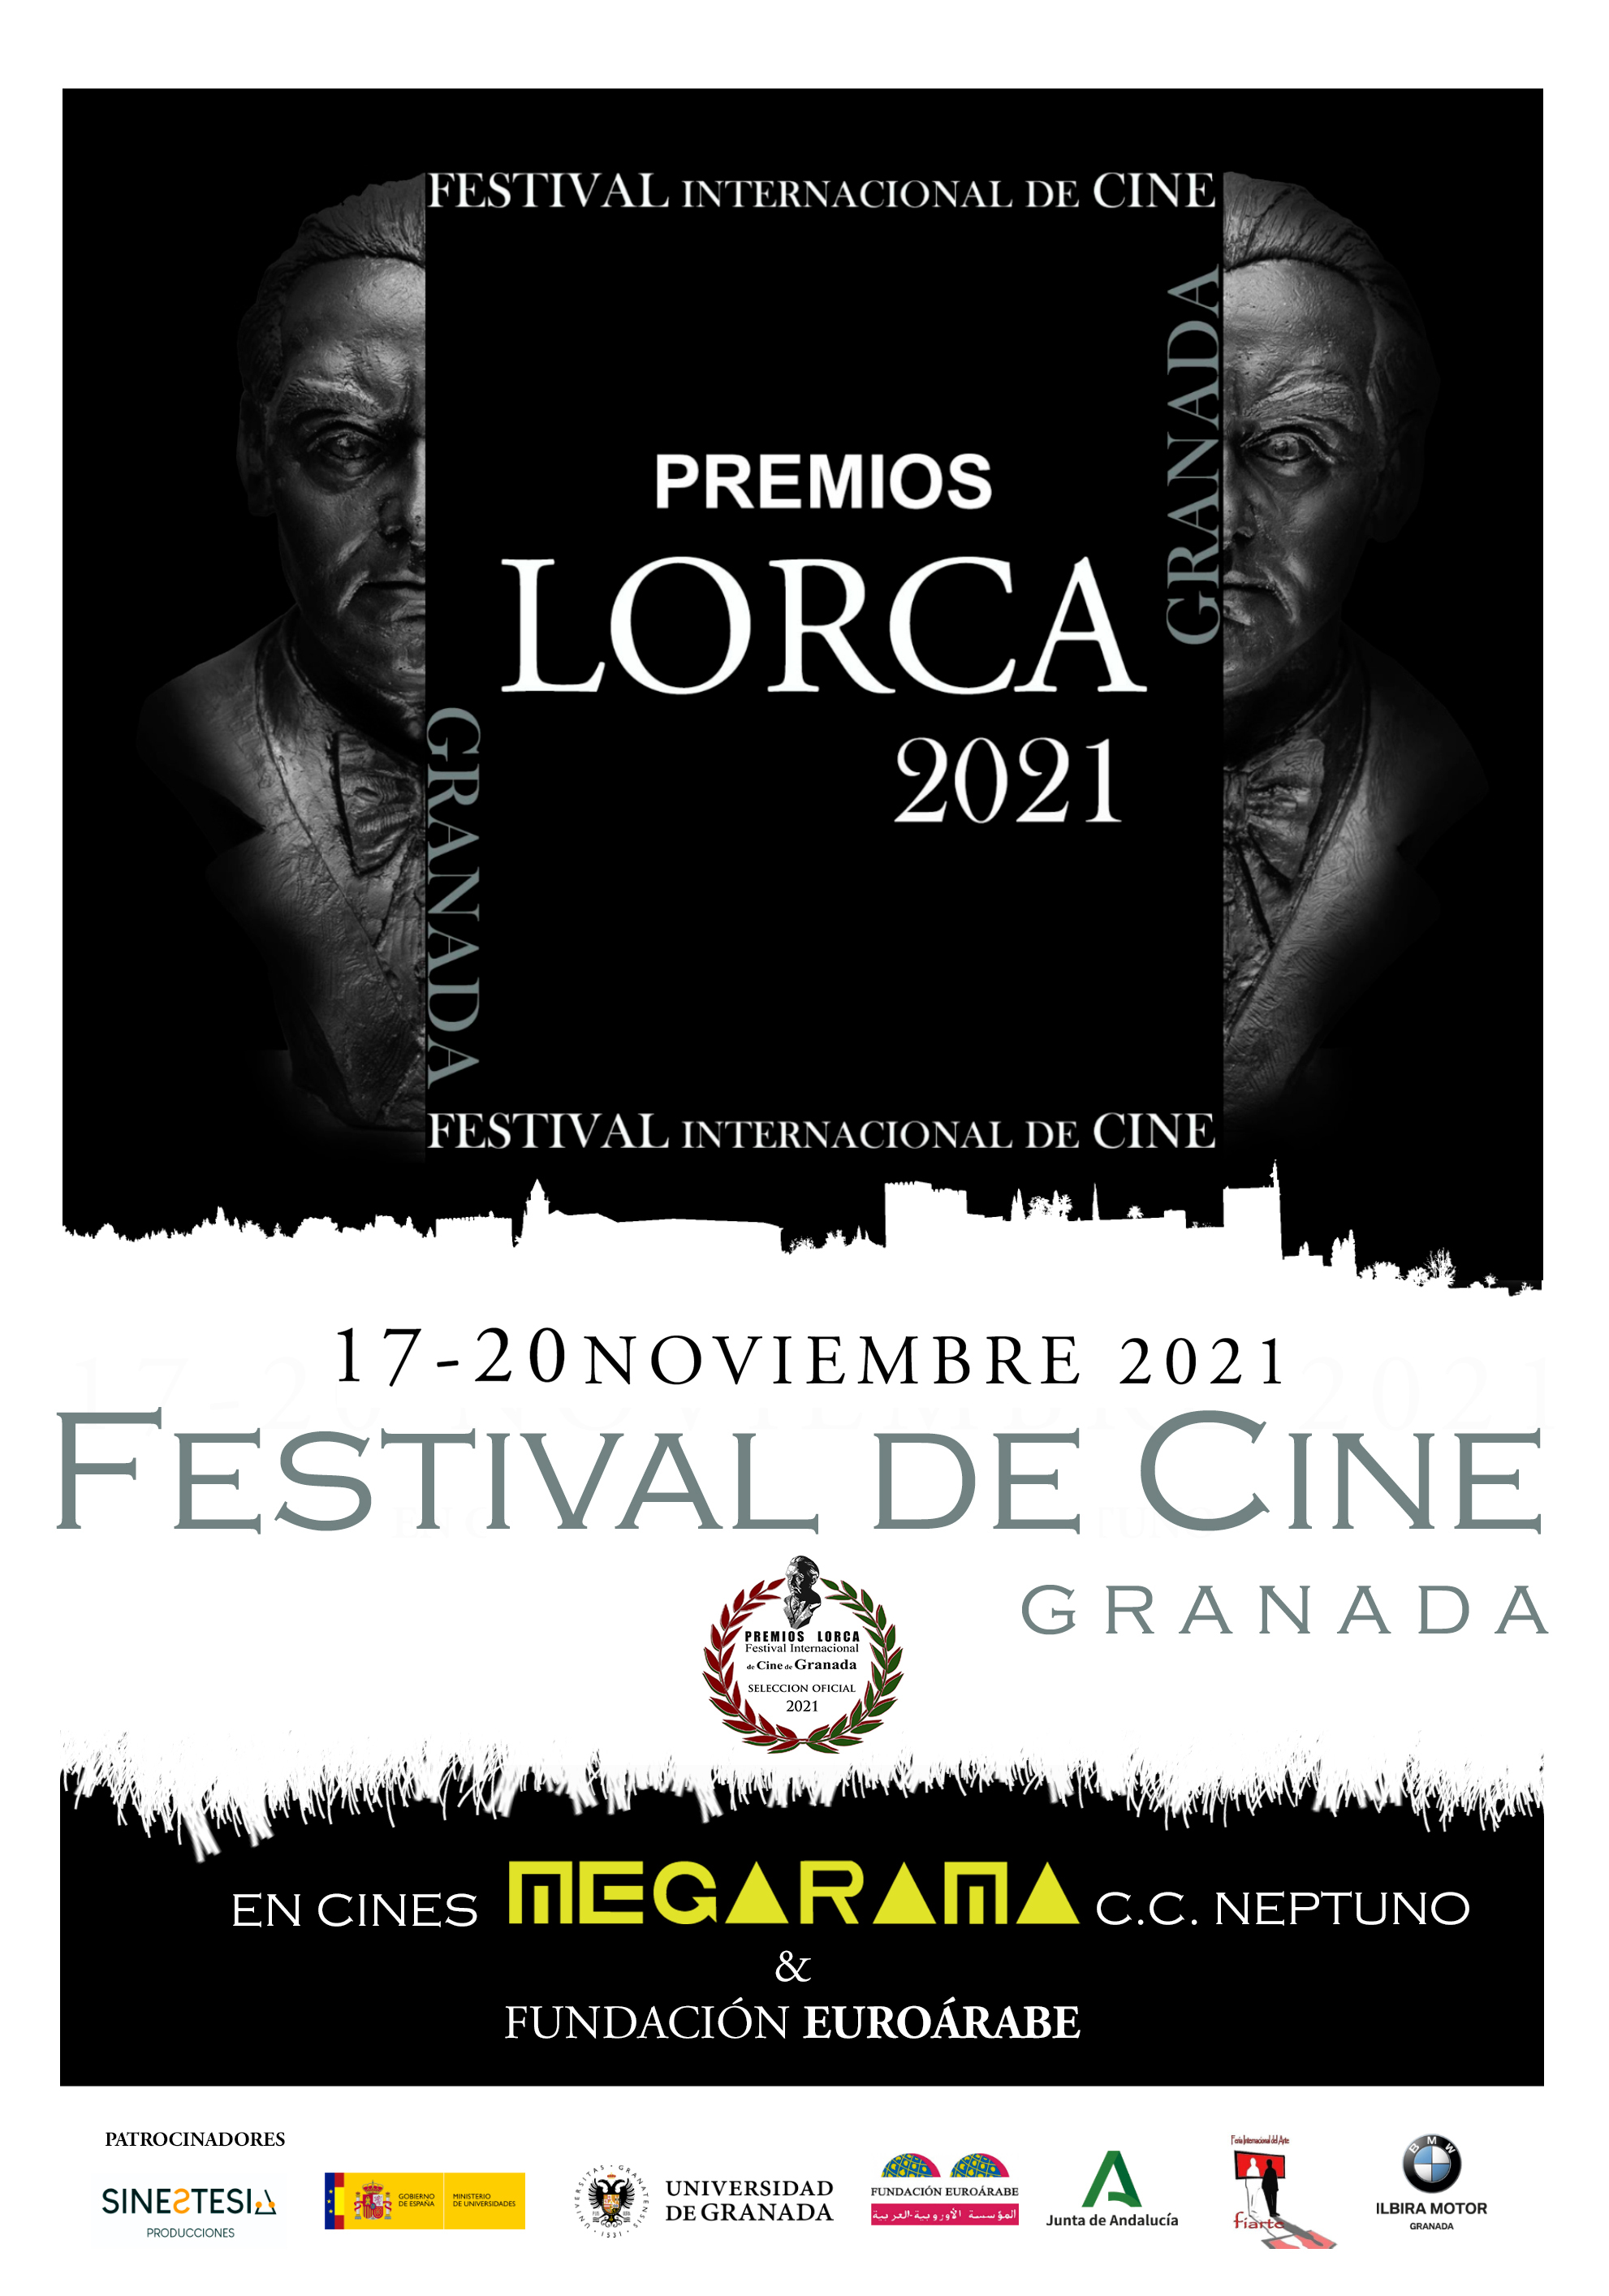 El Festival Internacional de Cine Premios Lorca de Granada celebrará su segunda edición del 17 al 20 de noviembre